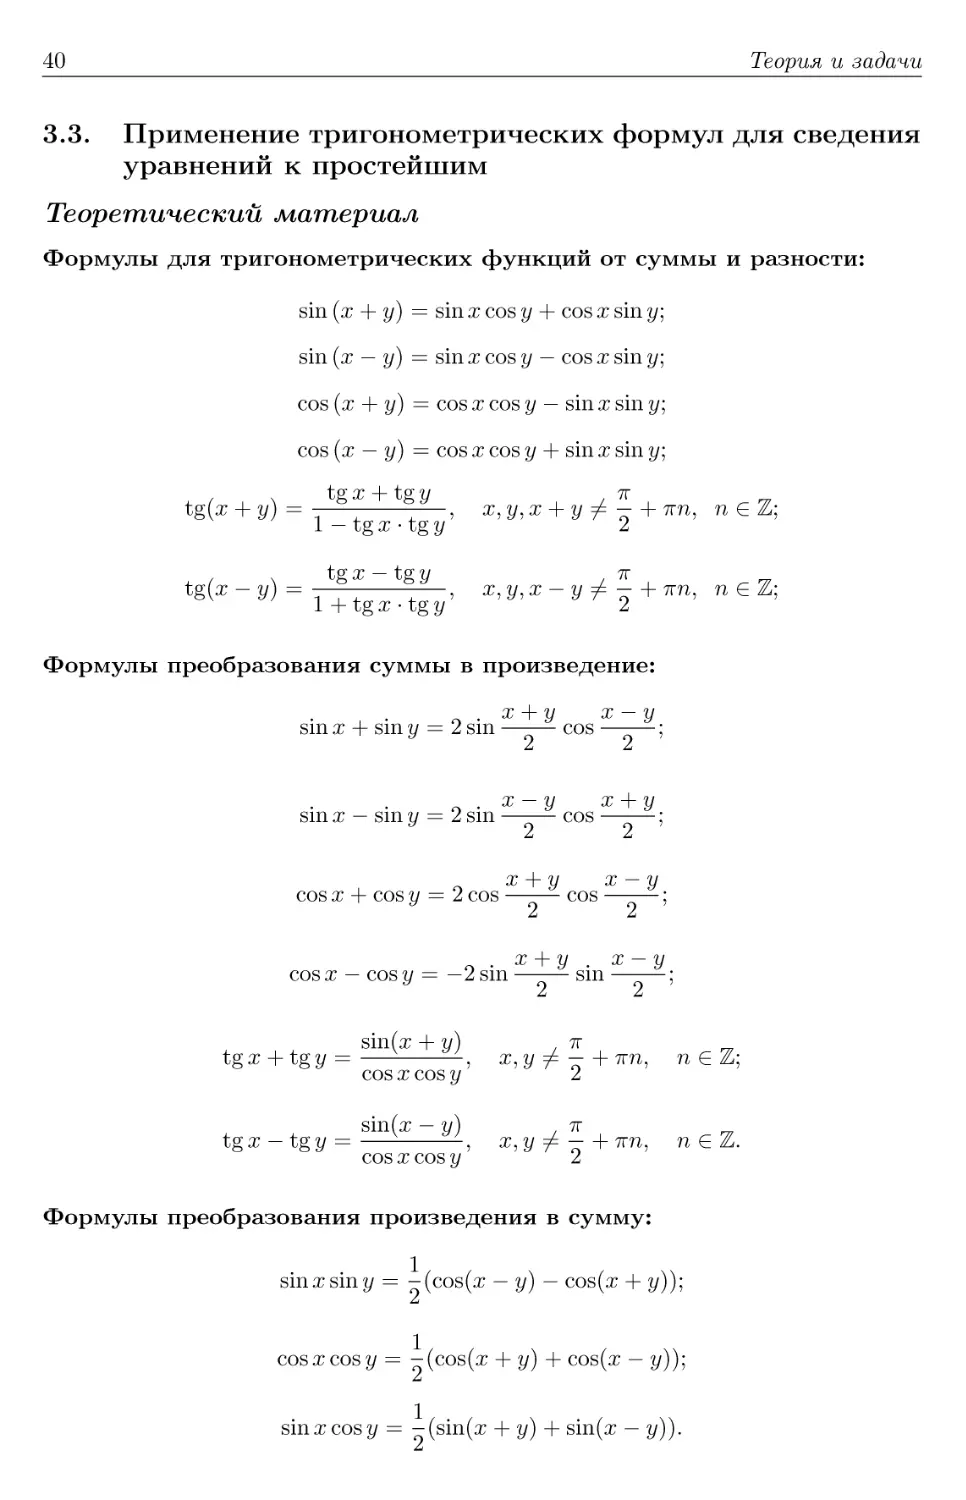 3.3. Применение тригонометрических формул для сведения уравнений к простейшим